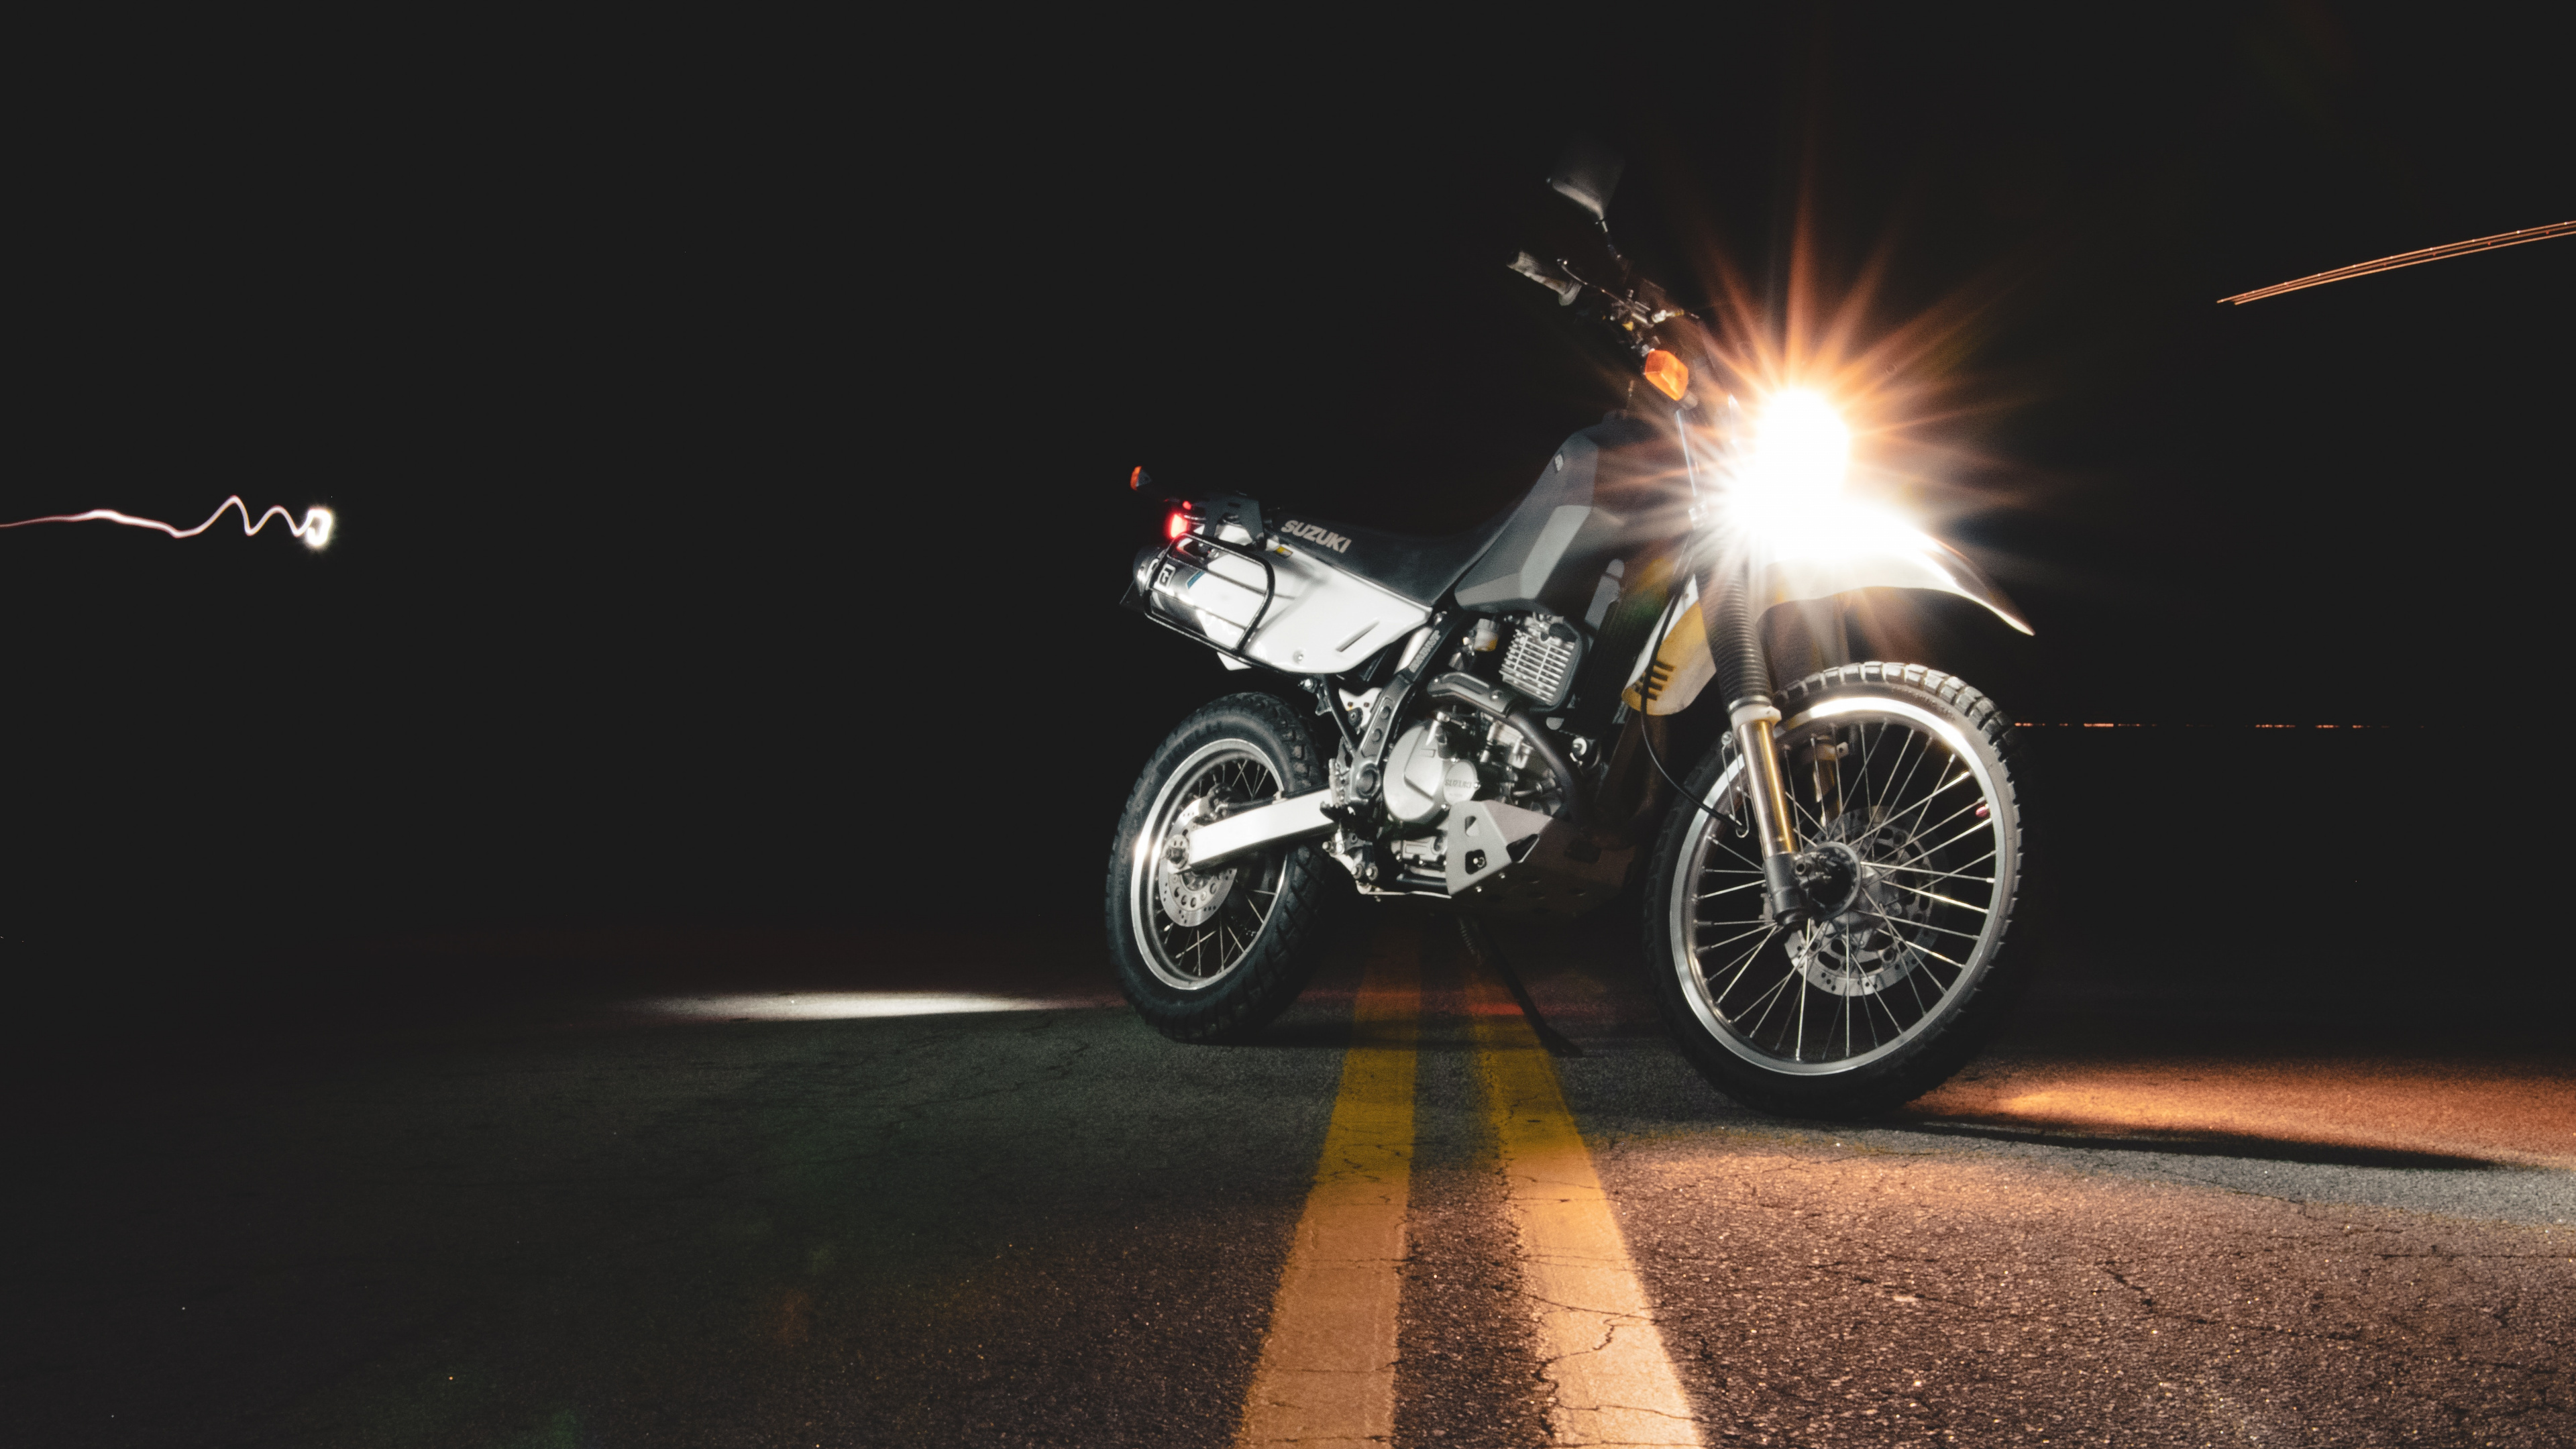 Motocicleta Negra y Plateada en la Carretera Durante la Noche. Wallpaper in 3840x2160 Resolution